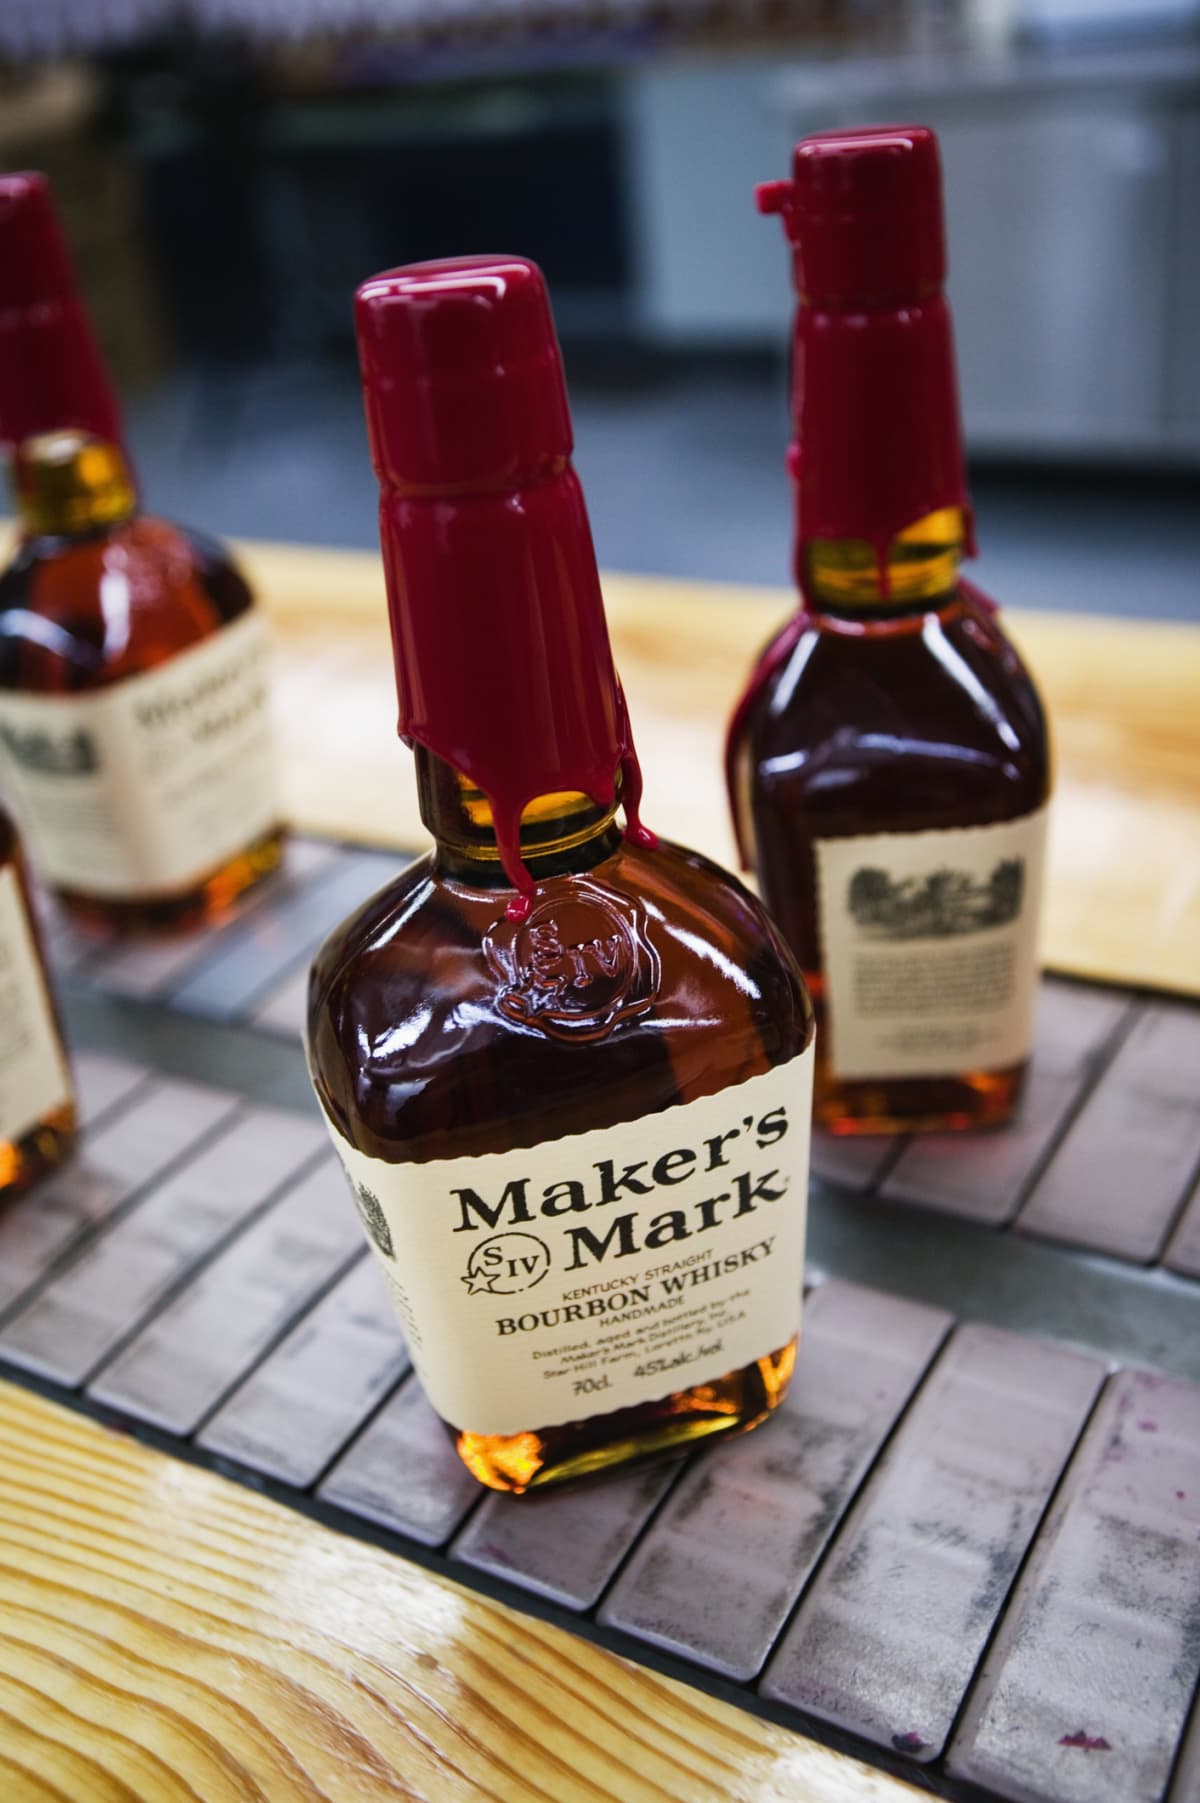 Three bottles of Maker's Mark whisky